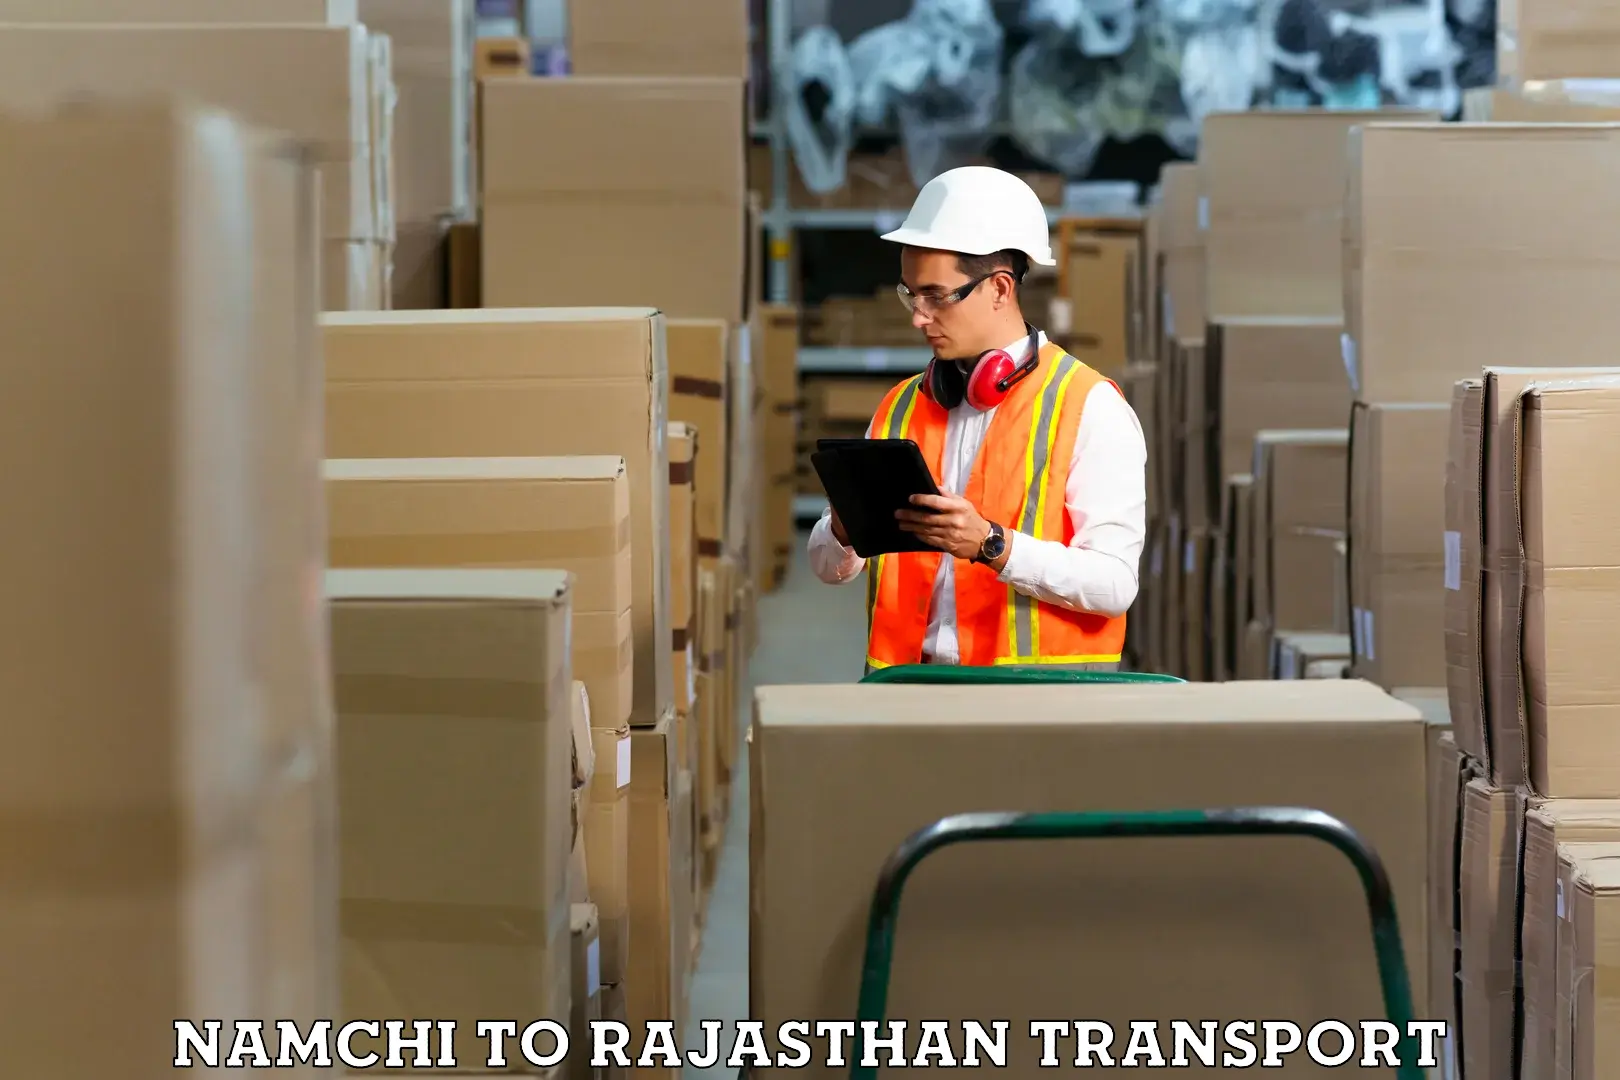 Furniture transport service Namchi to Dhariyawad